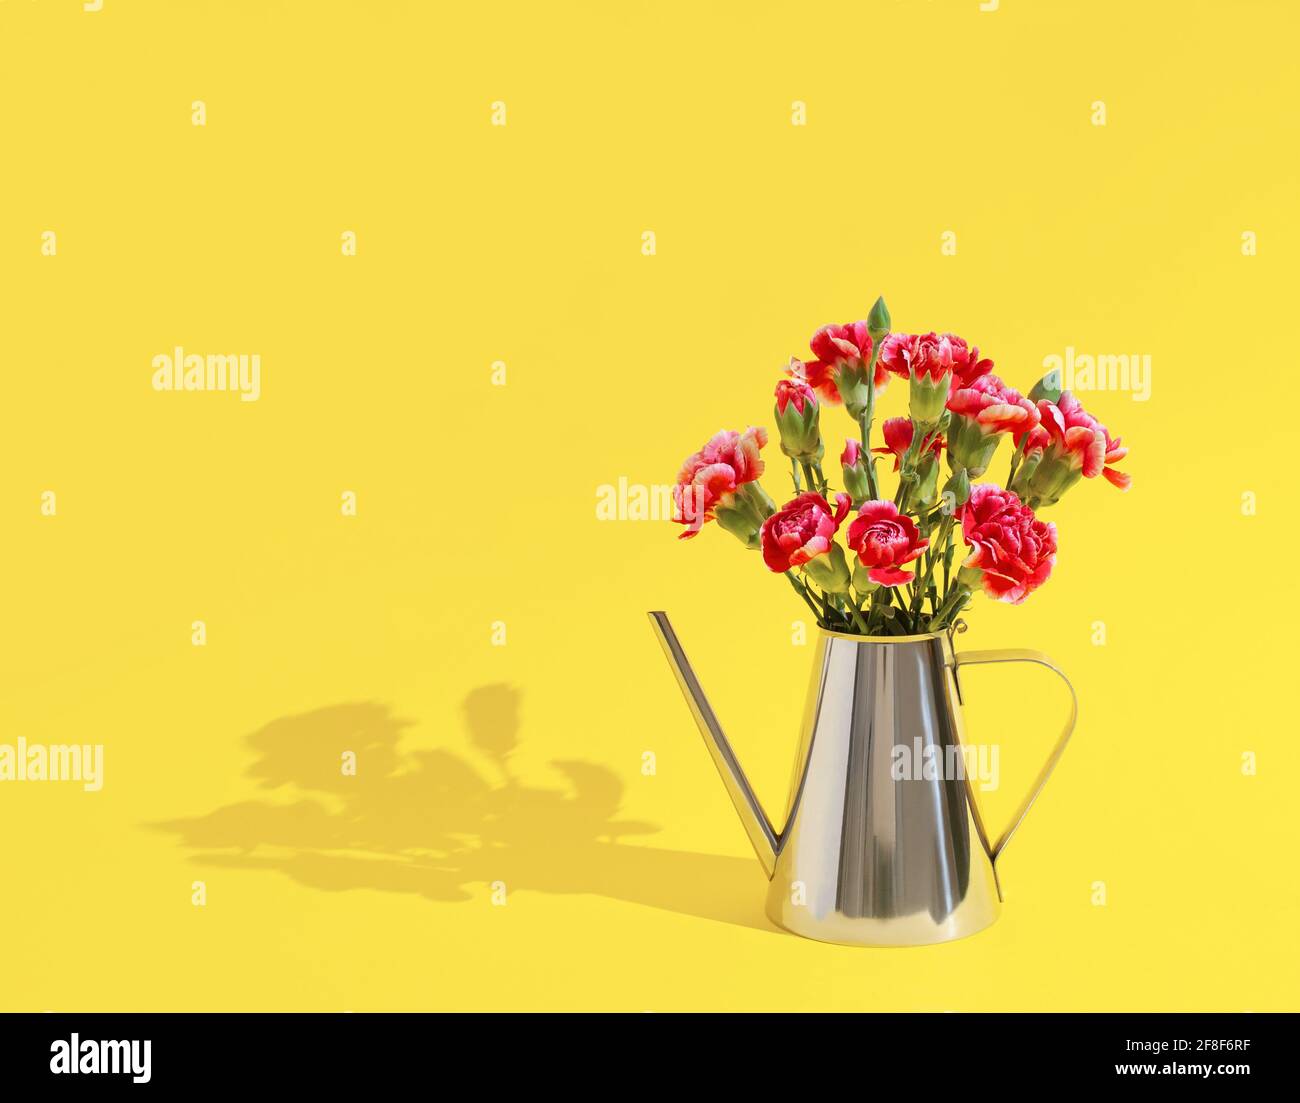 Concept d'été créatif avec pichet arrosoir et fleurs de carnation colorées sur fond jaune pastel. Concept de nature minimale. Banque D'Images